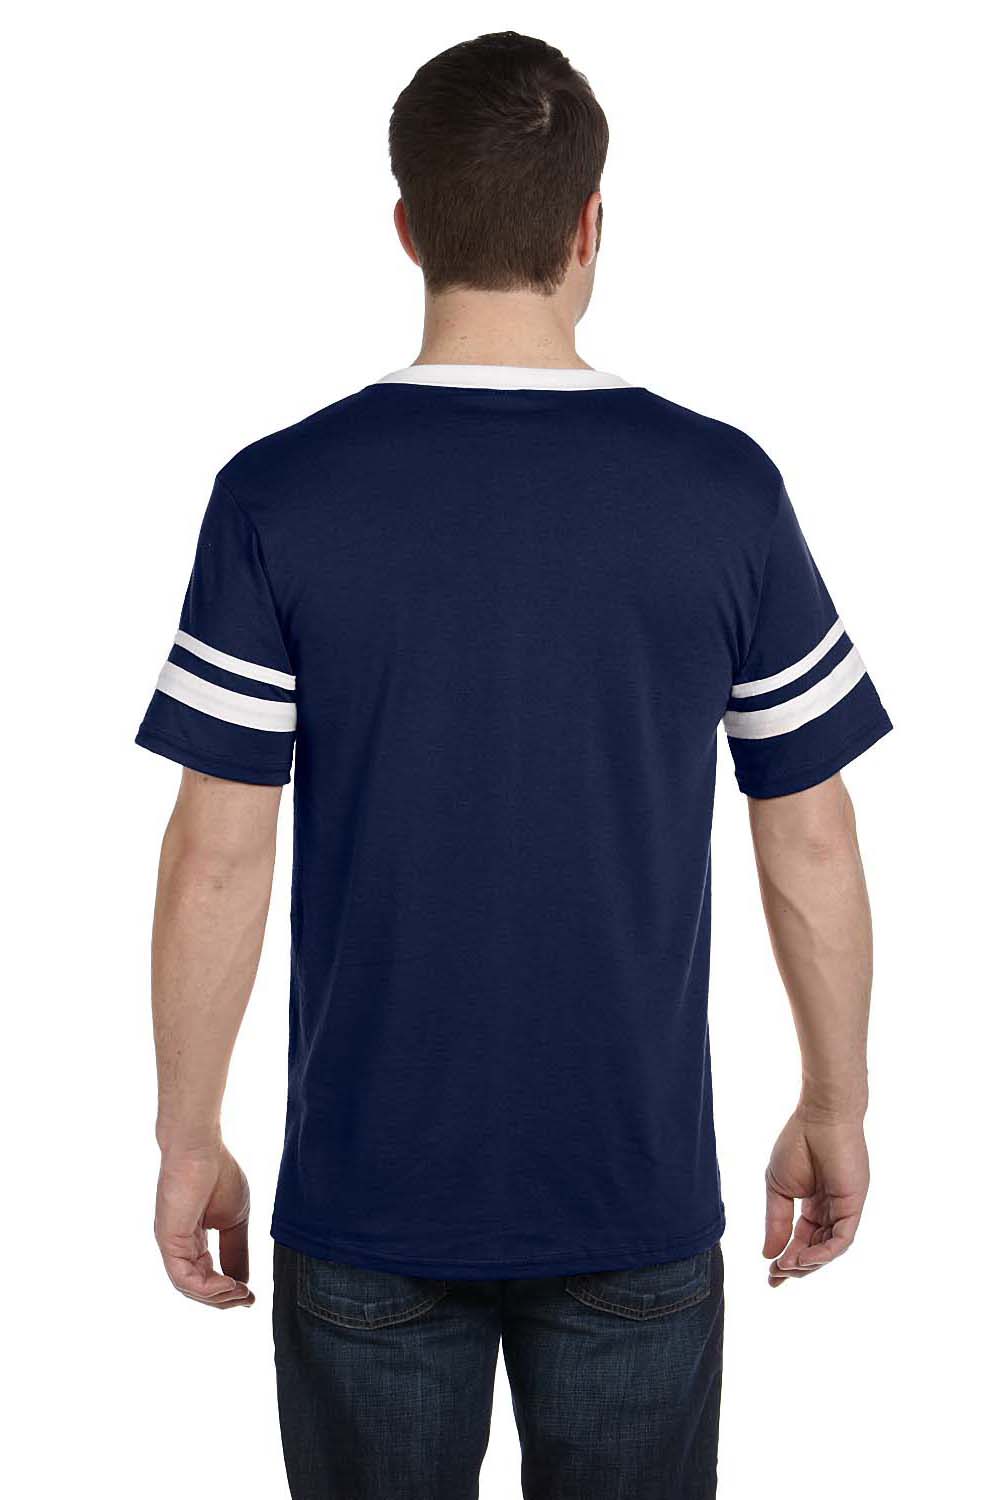 Augusta Sportswear 360 Mens Short Sleeve V-Neck T-Shirt Navy Blue/White Model Back